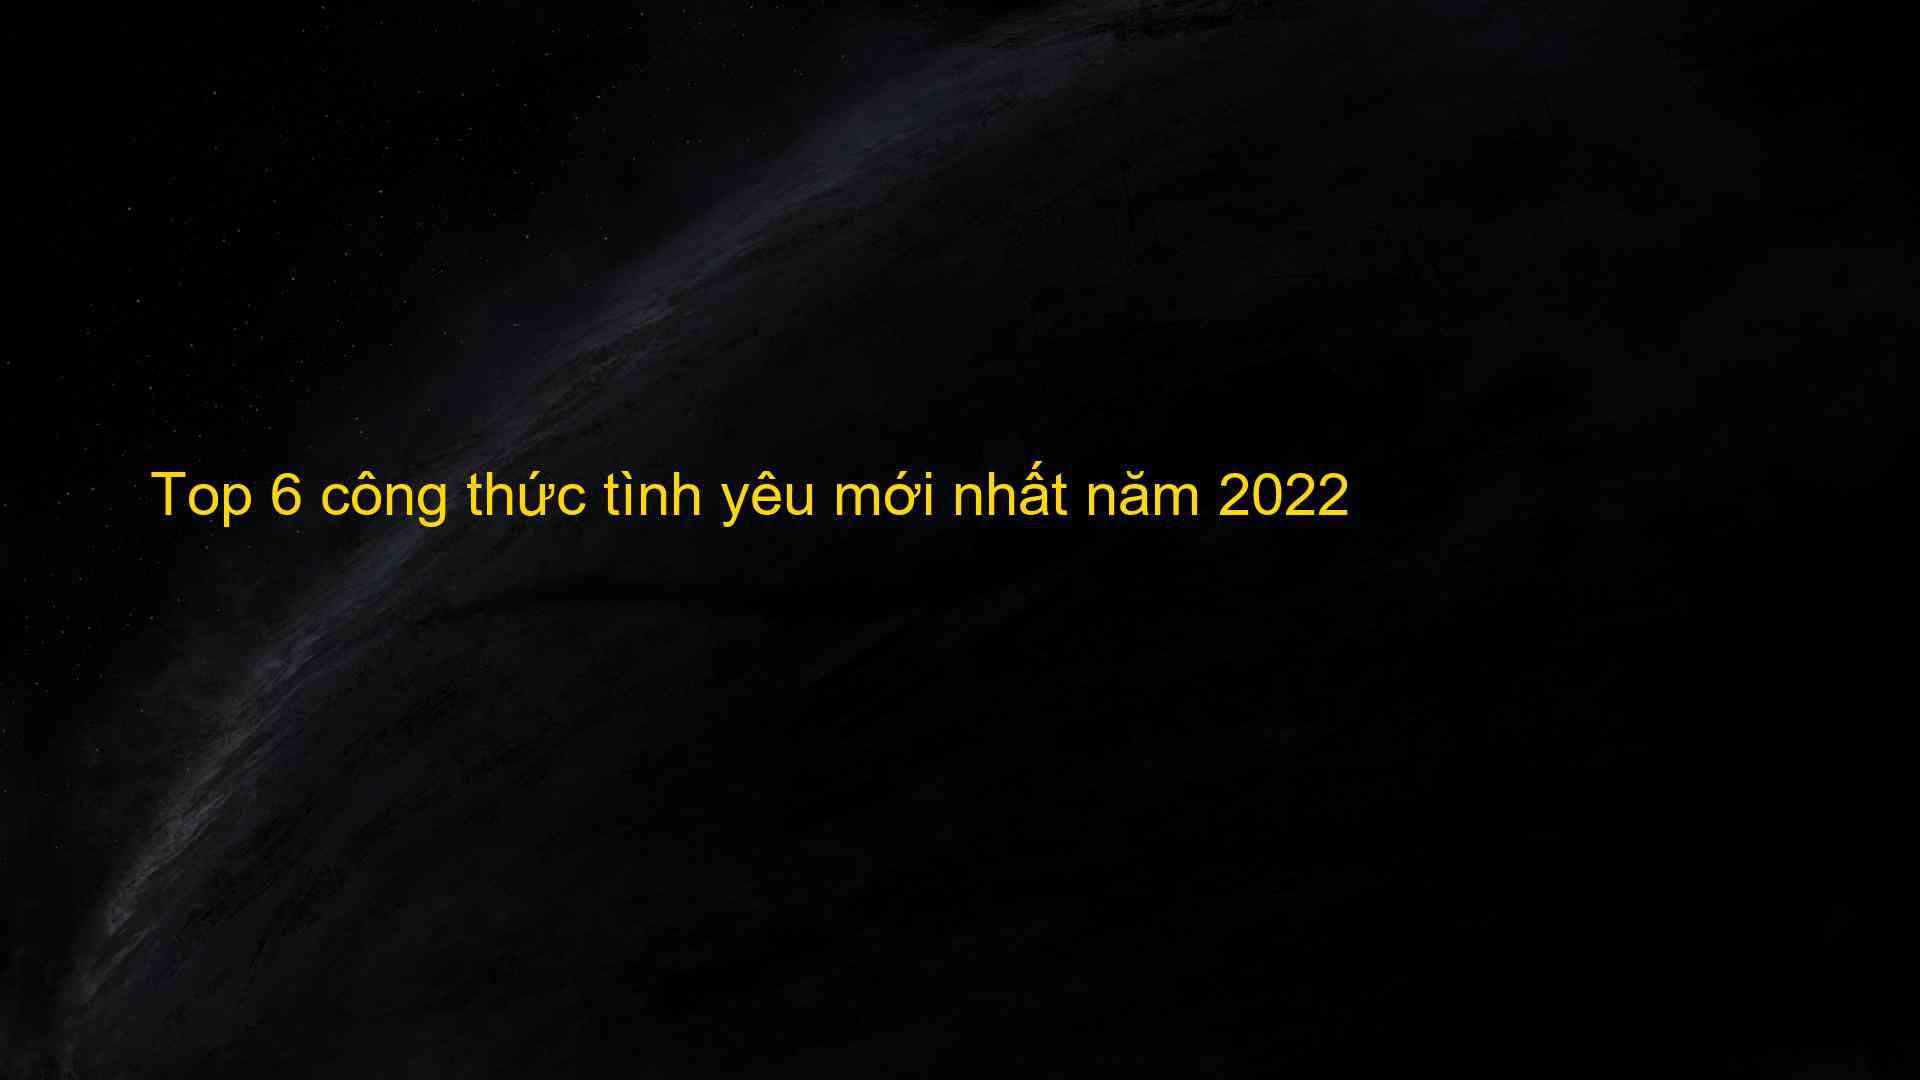 Top 6 cong thuc tinh yeu moi nhat nam 2022 1659742399